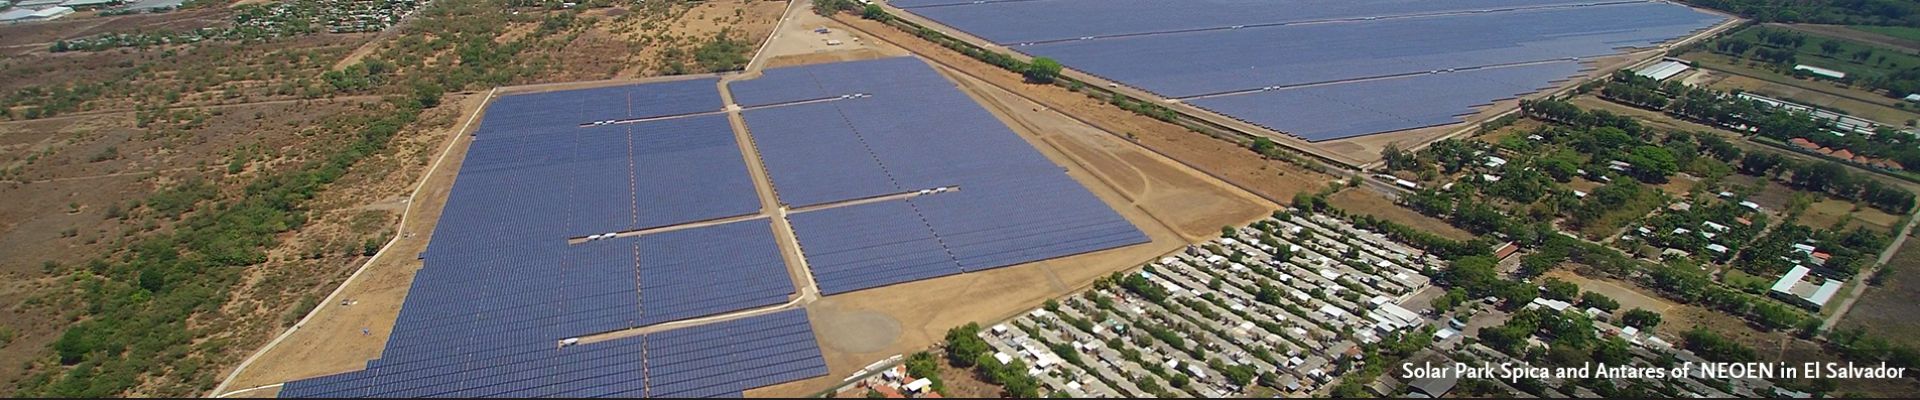 Pronósticos de potencia solar para parques solar Spica y Antares de NEOEN en El Salvador